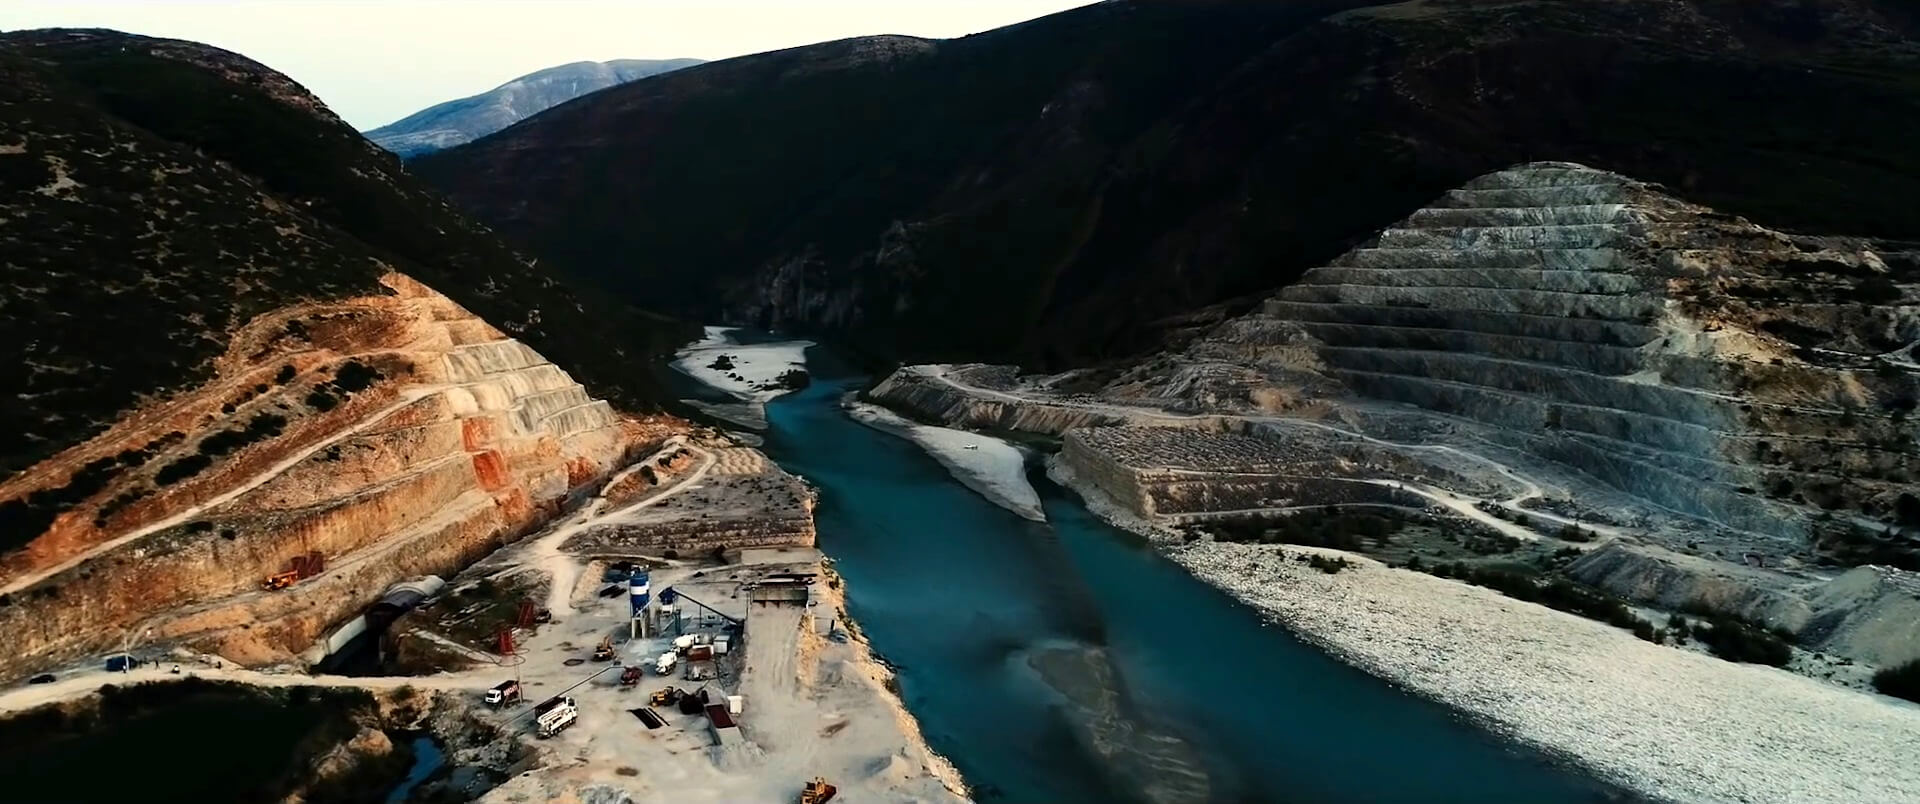 Destructieve dammen bedreigen zoetwaterleven Balkanlanden